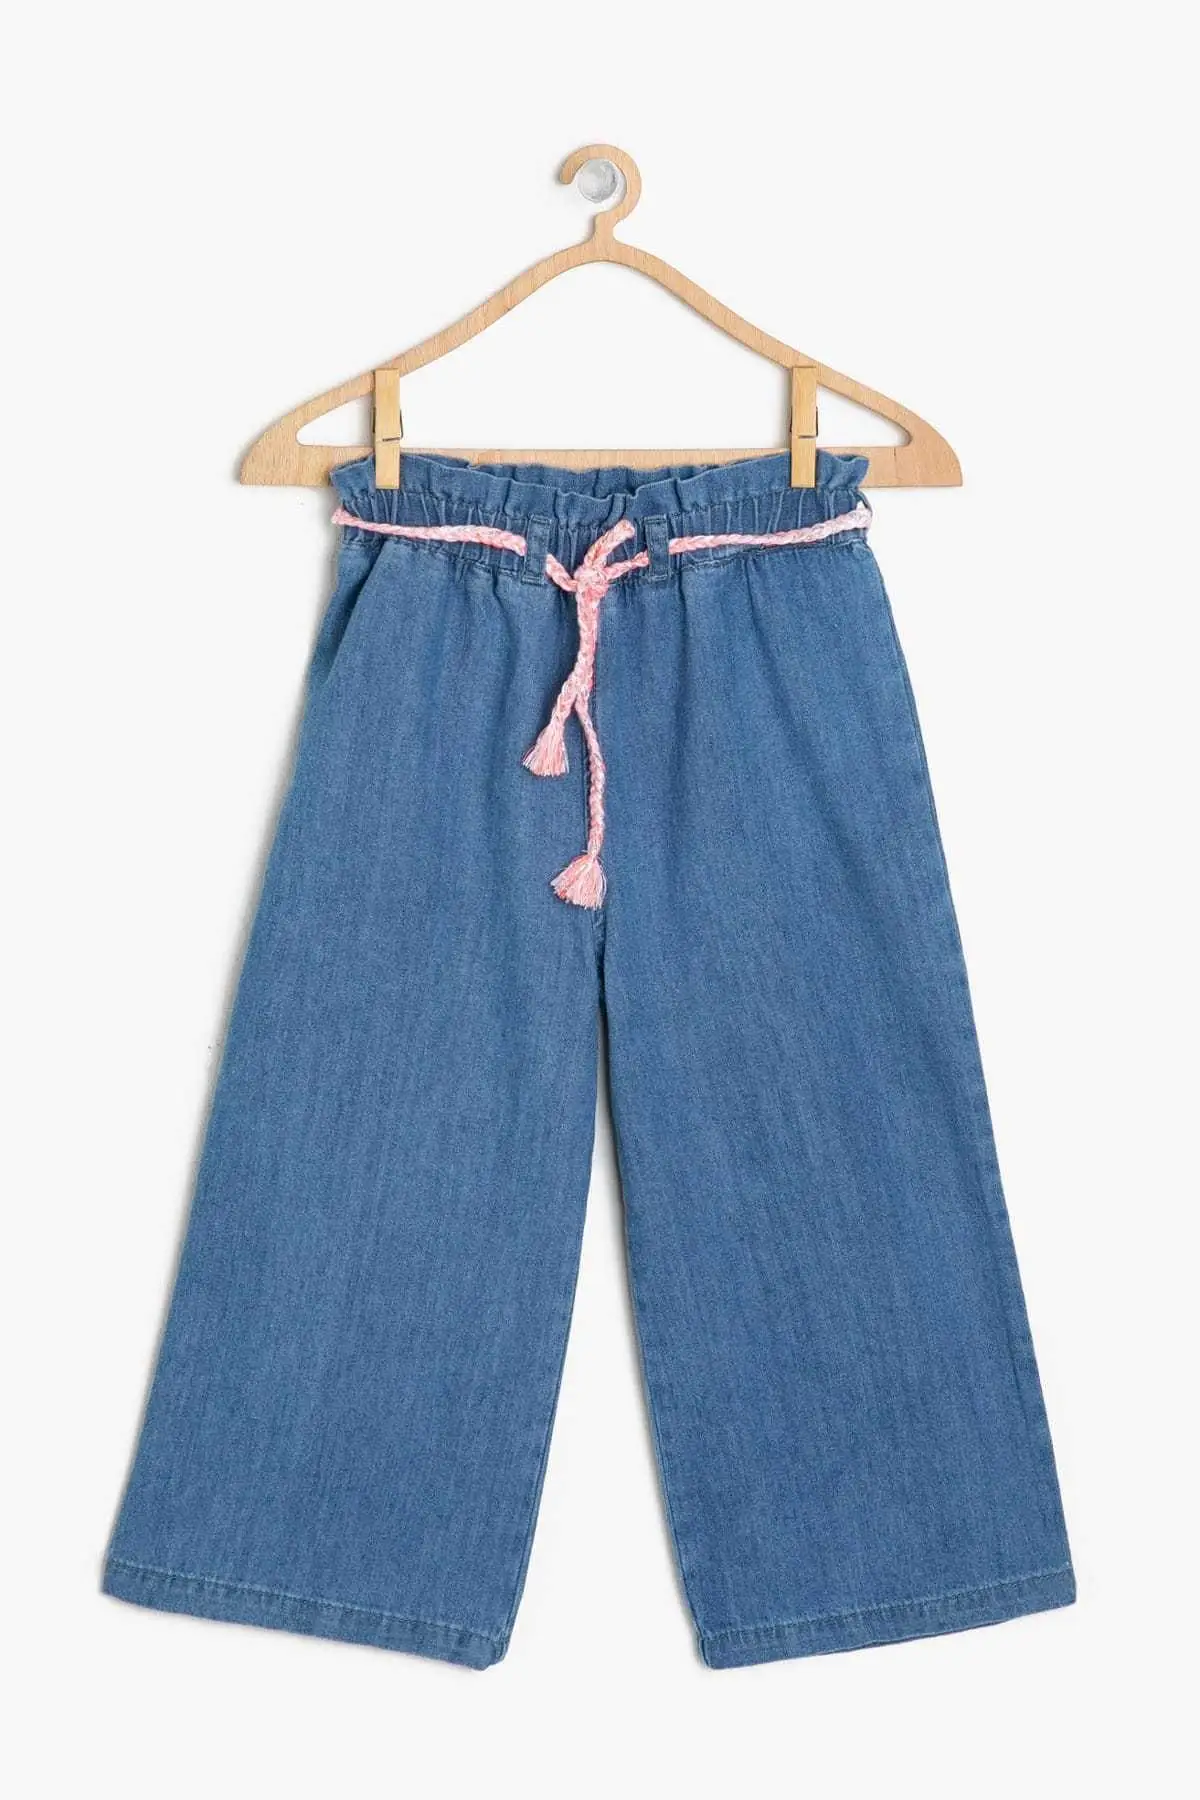 Koton/детские синие джинсовые штаны для девочек Beli | Женская одежда